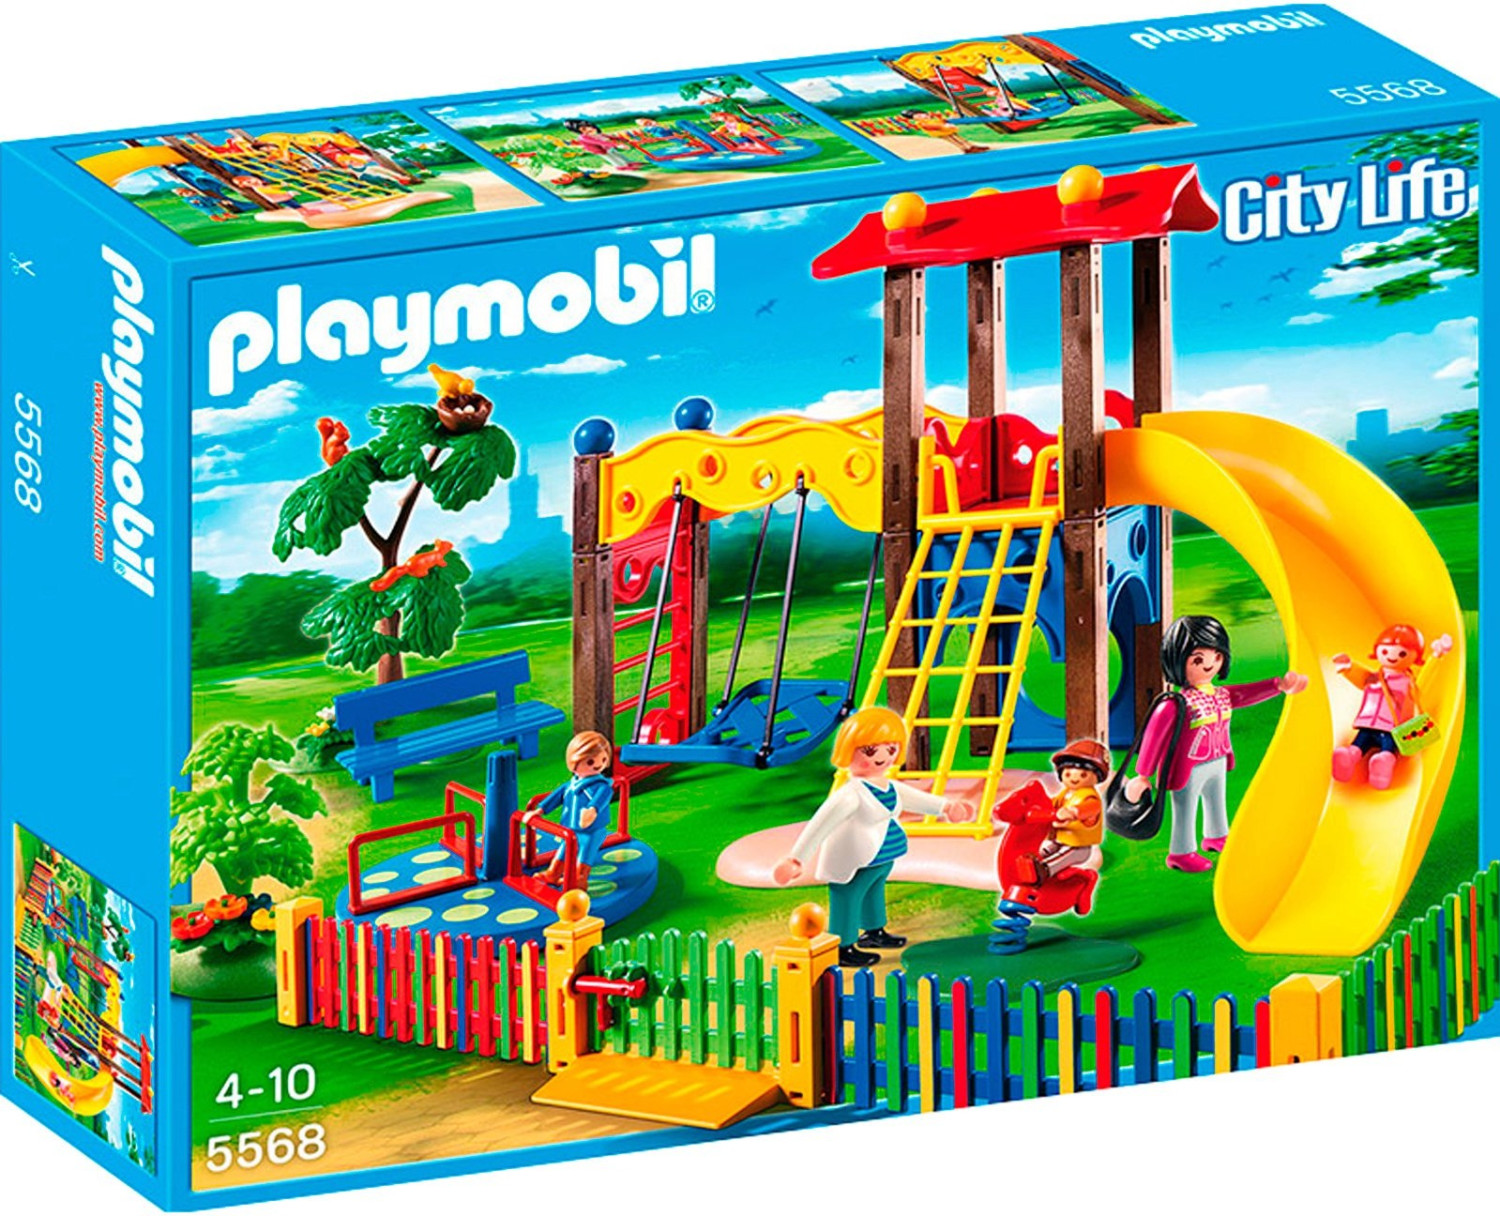 Meilleurs Playmobil : nouveautés et jouets préférés des enfants